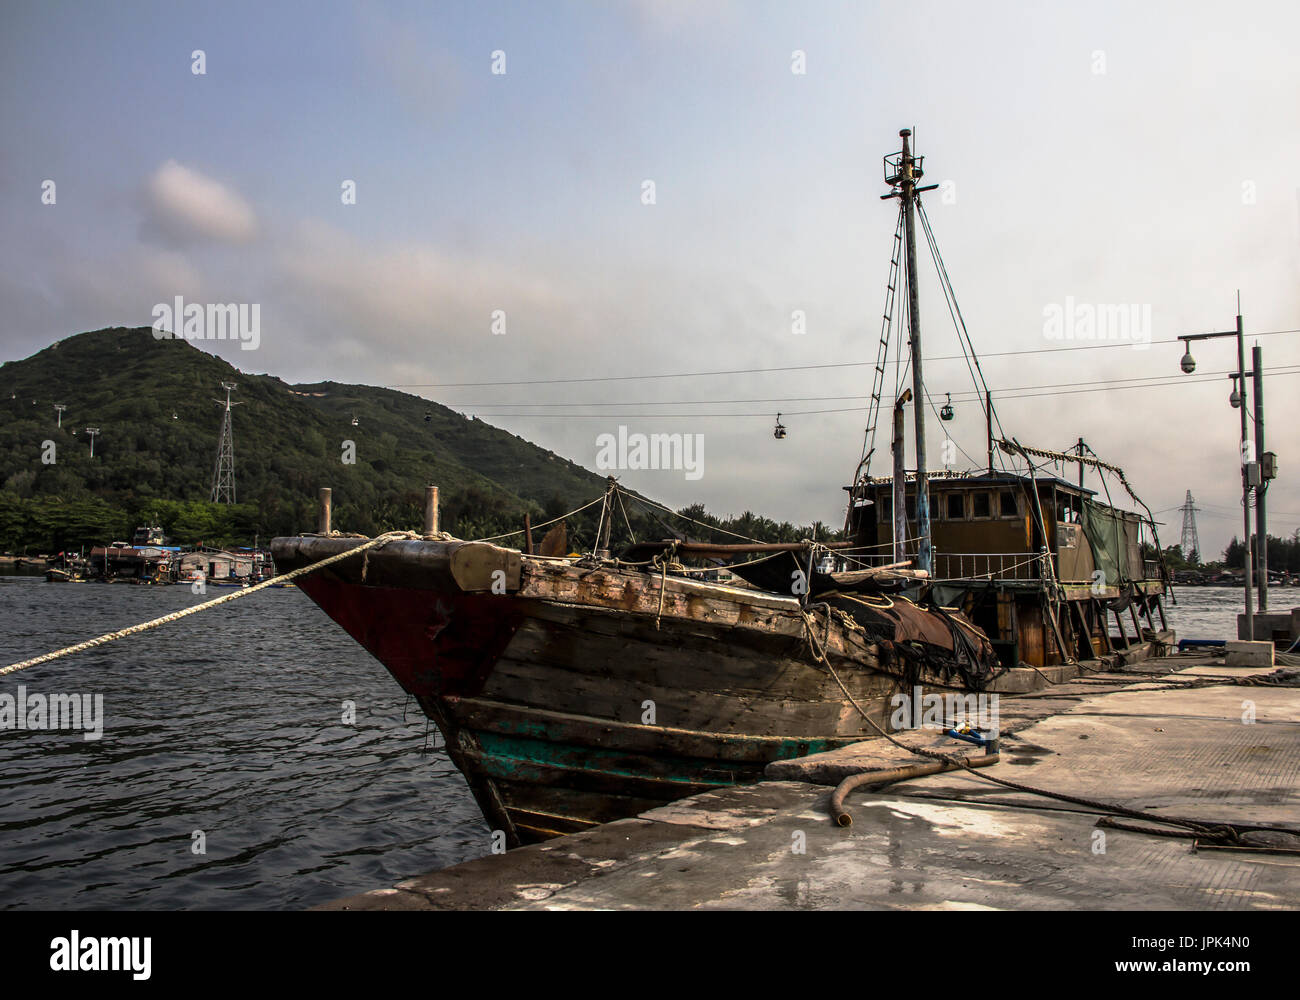 Lingshui, pescatori villaggio galleggiante, Nanwan Monkey Island e transoceanico teleferica come sfondo, Foto Stock